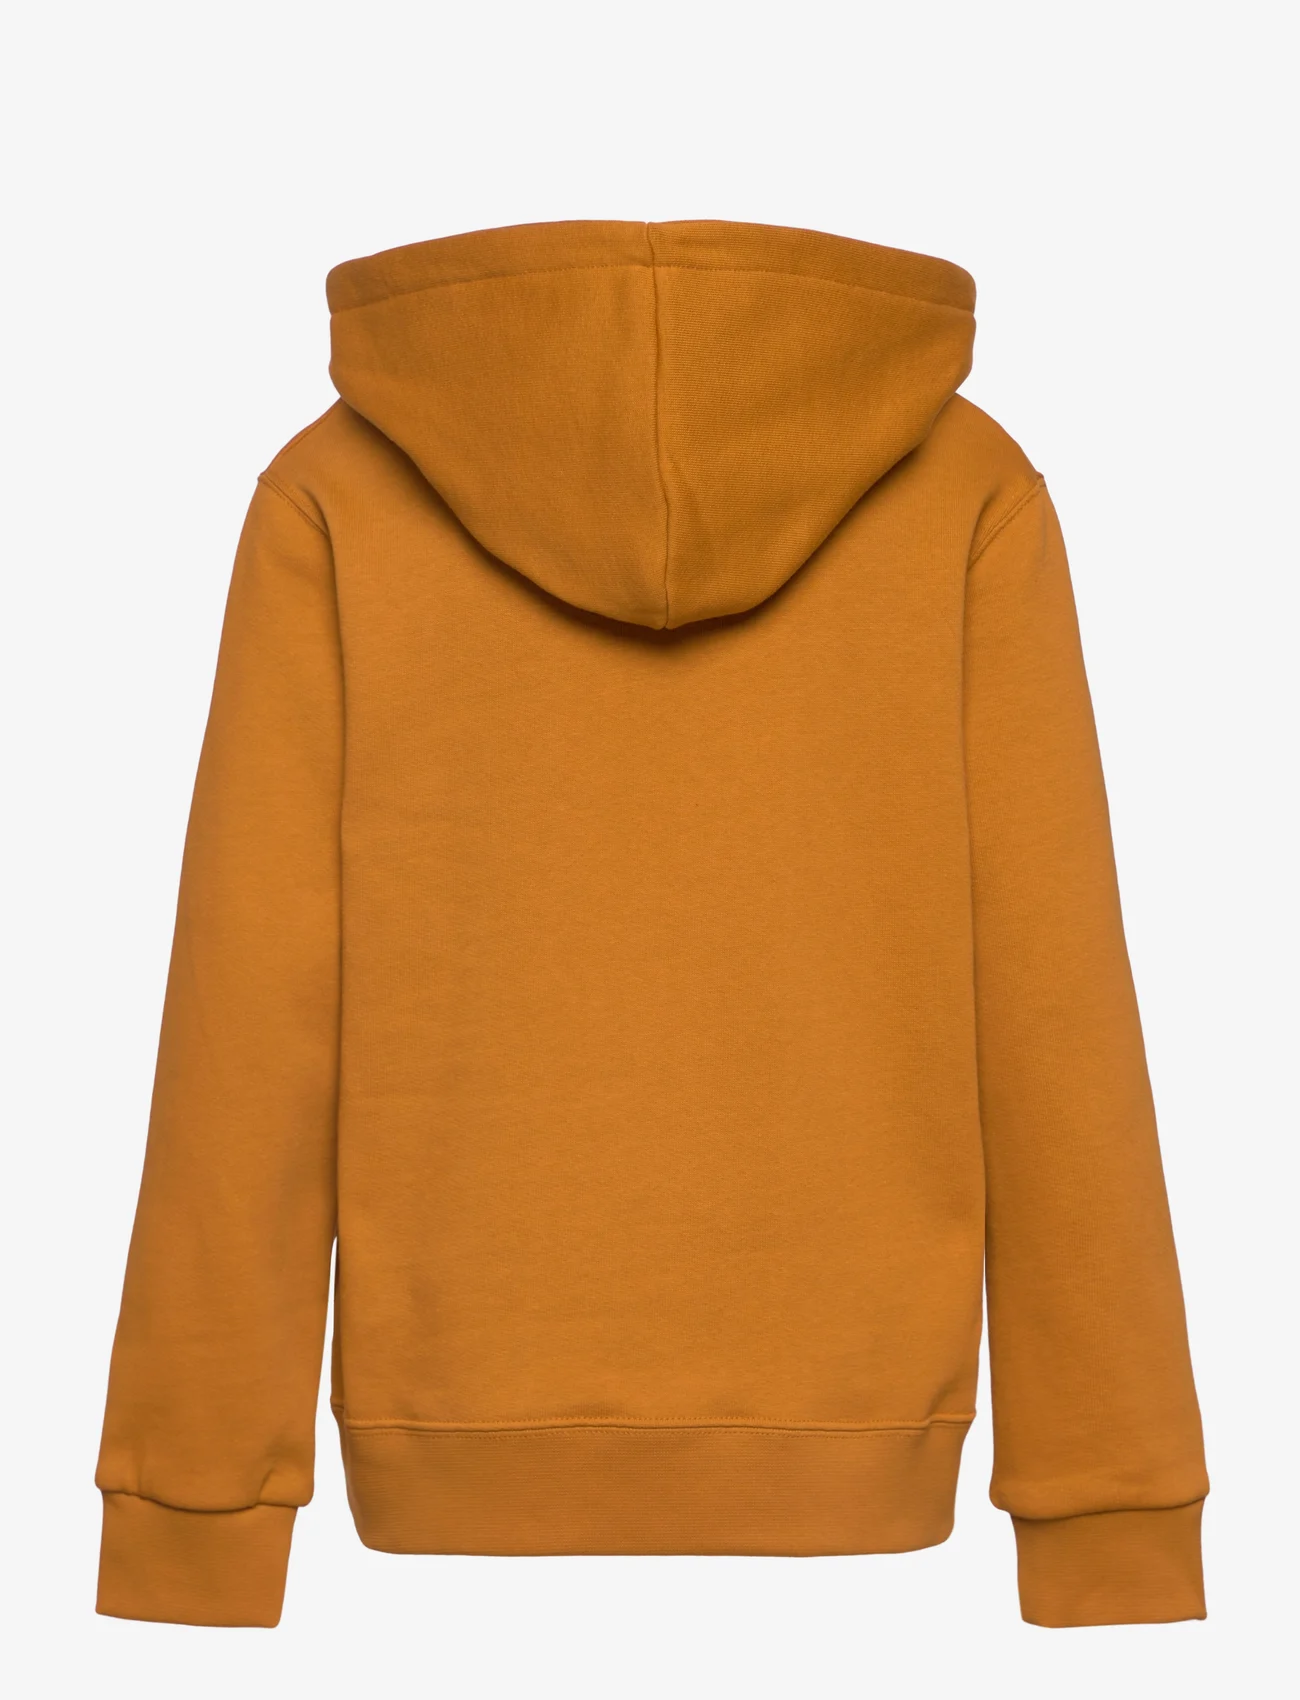 Wood Wood - Izzy kids IVY hoodie - sweatshirts & hoodies - golden brown - 1